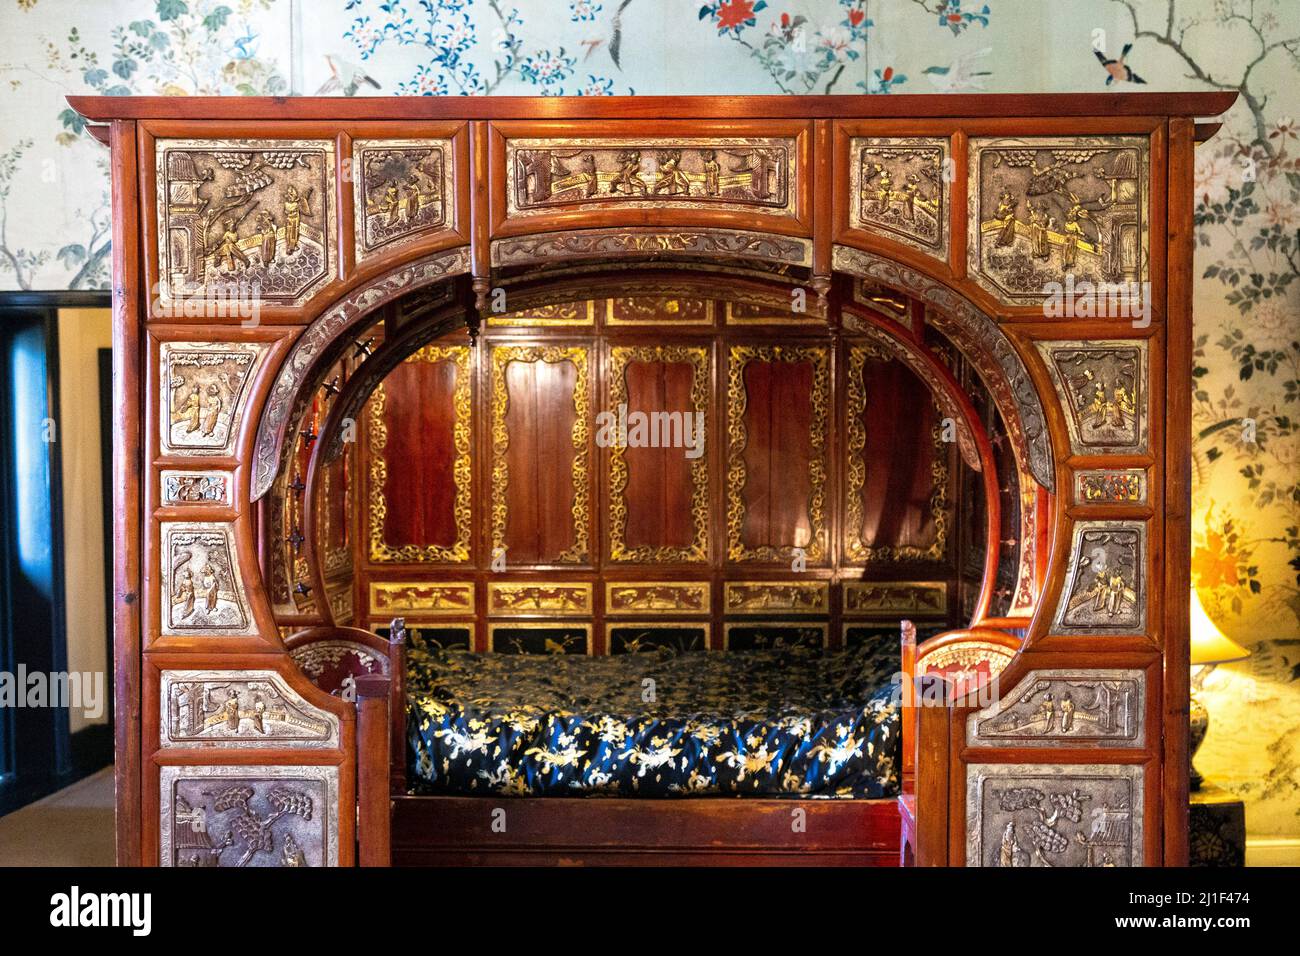 Ornate antique Chinese wedding bed at Knebworth House, Hertfordshire, UK Stock Photo